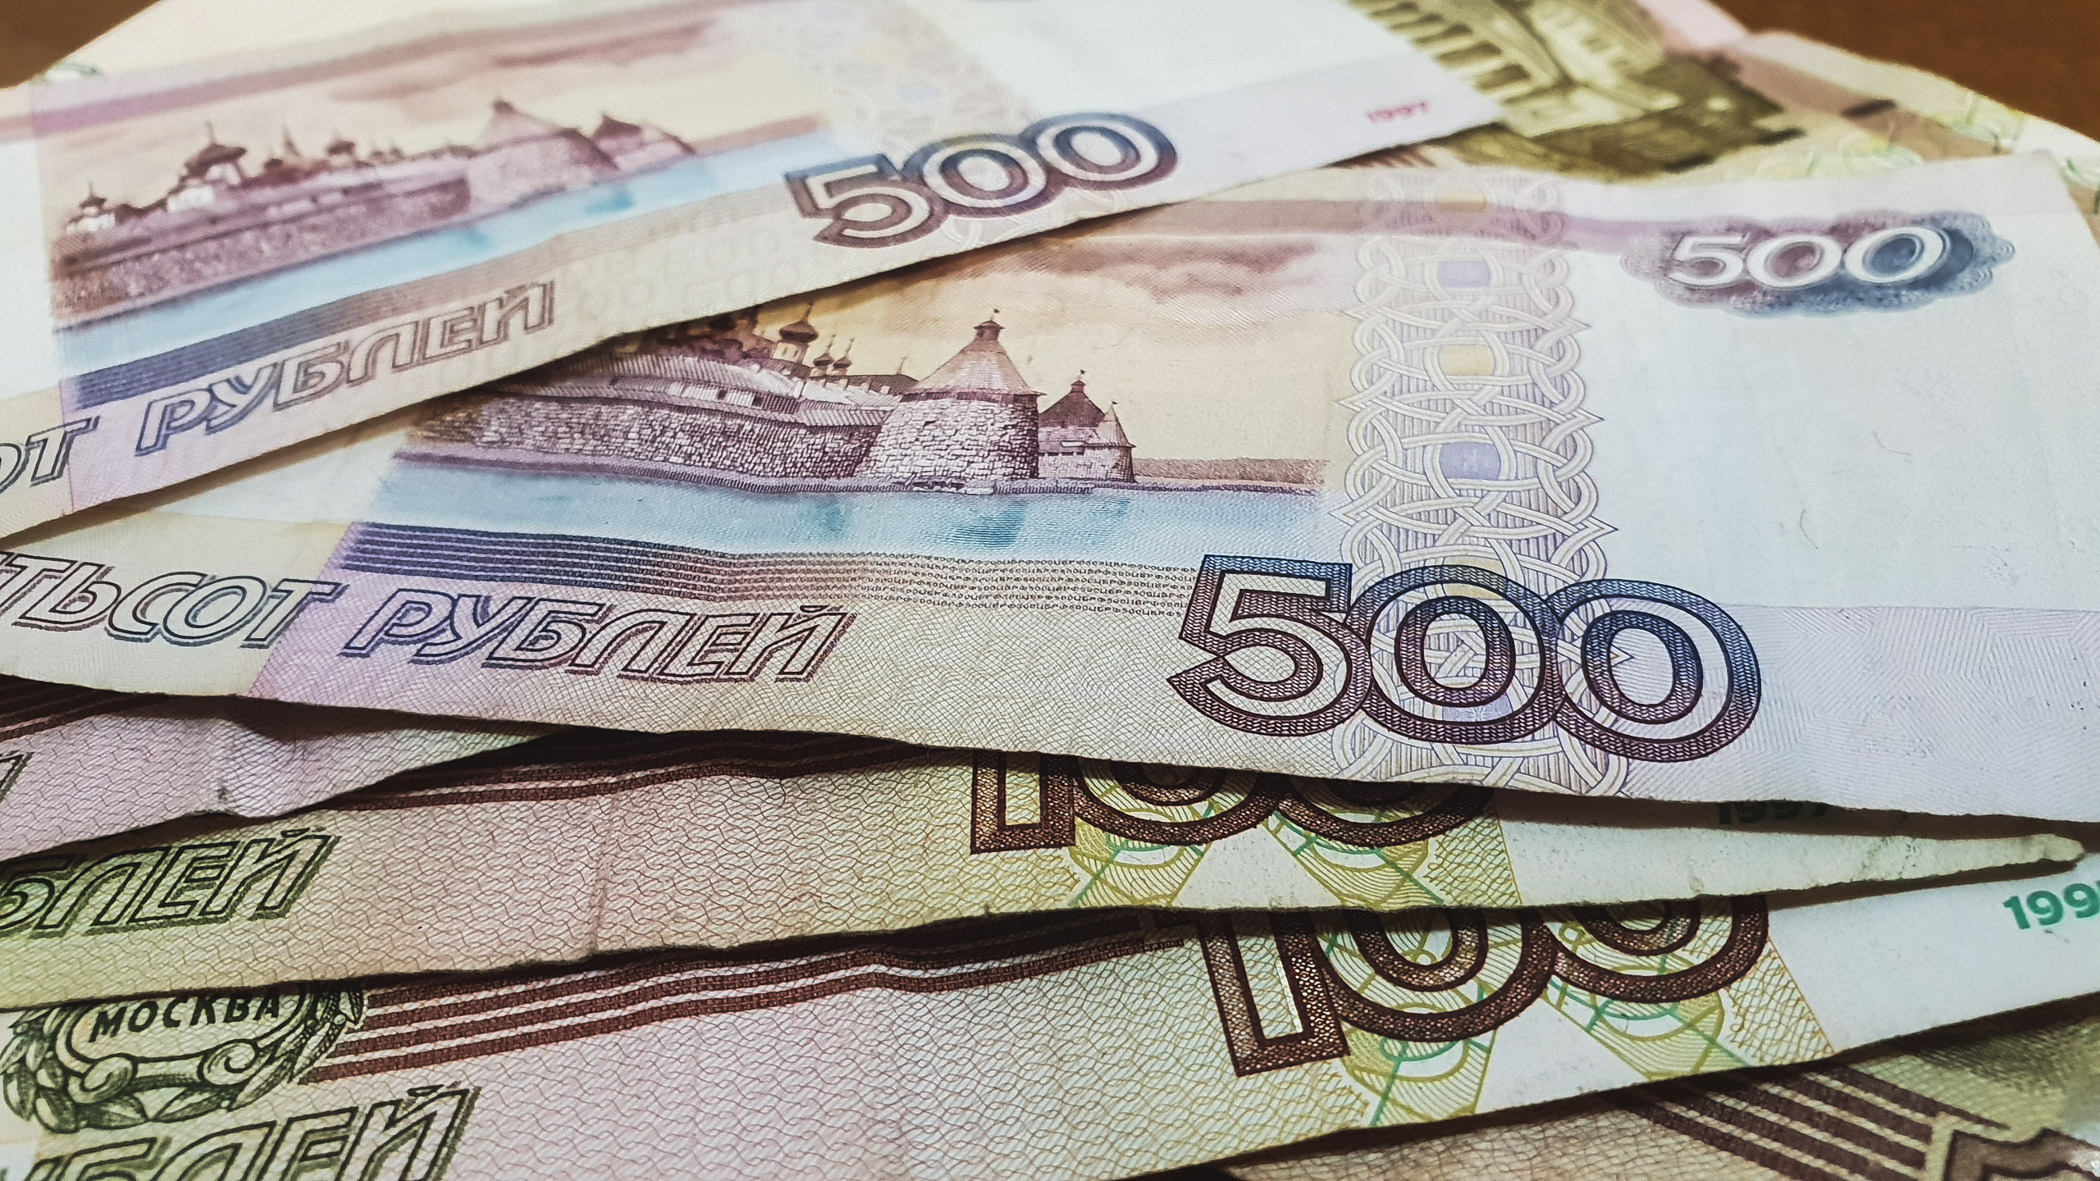 Из них более 677 млн рублей — просроченная задолженность.